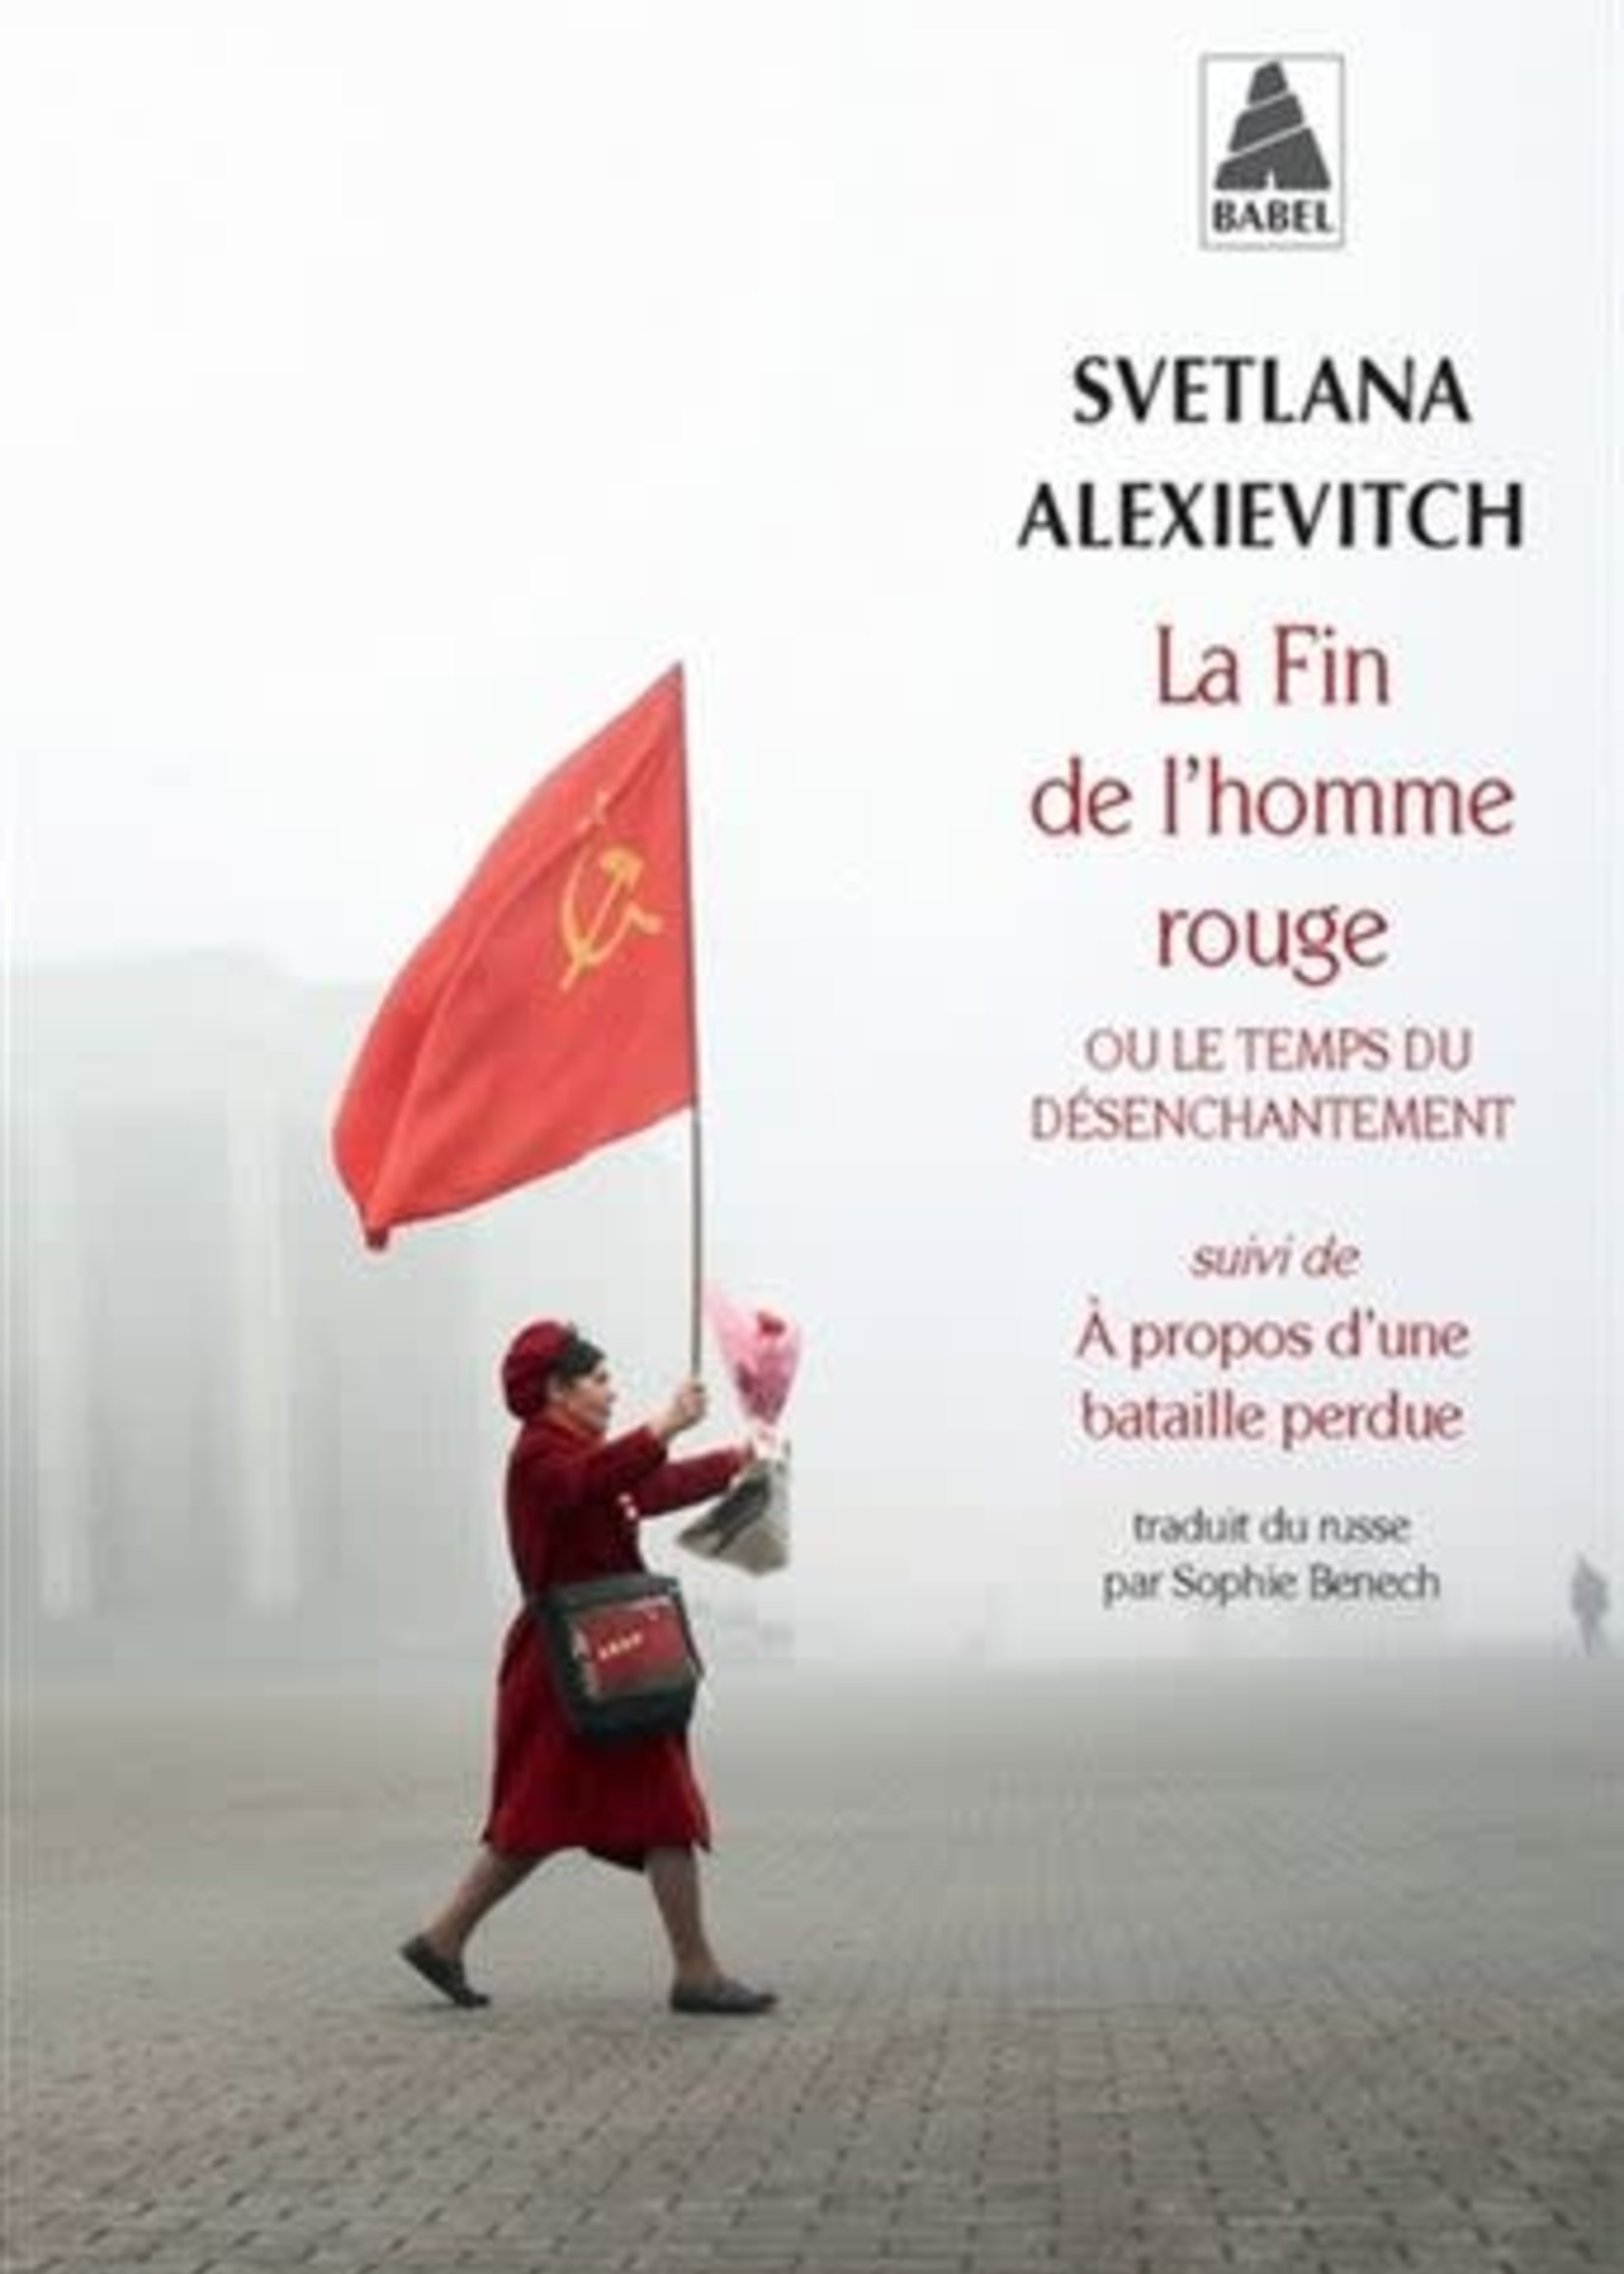 La fin de l'homme rouge by Svetlana Alexievitch